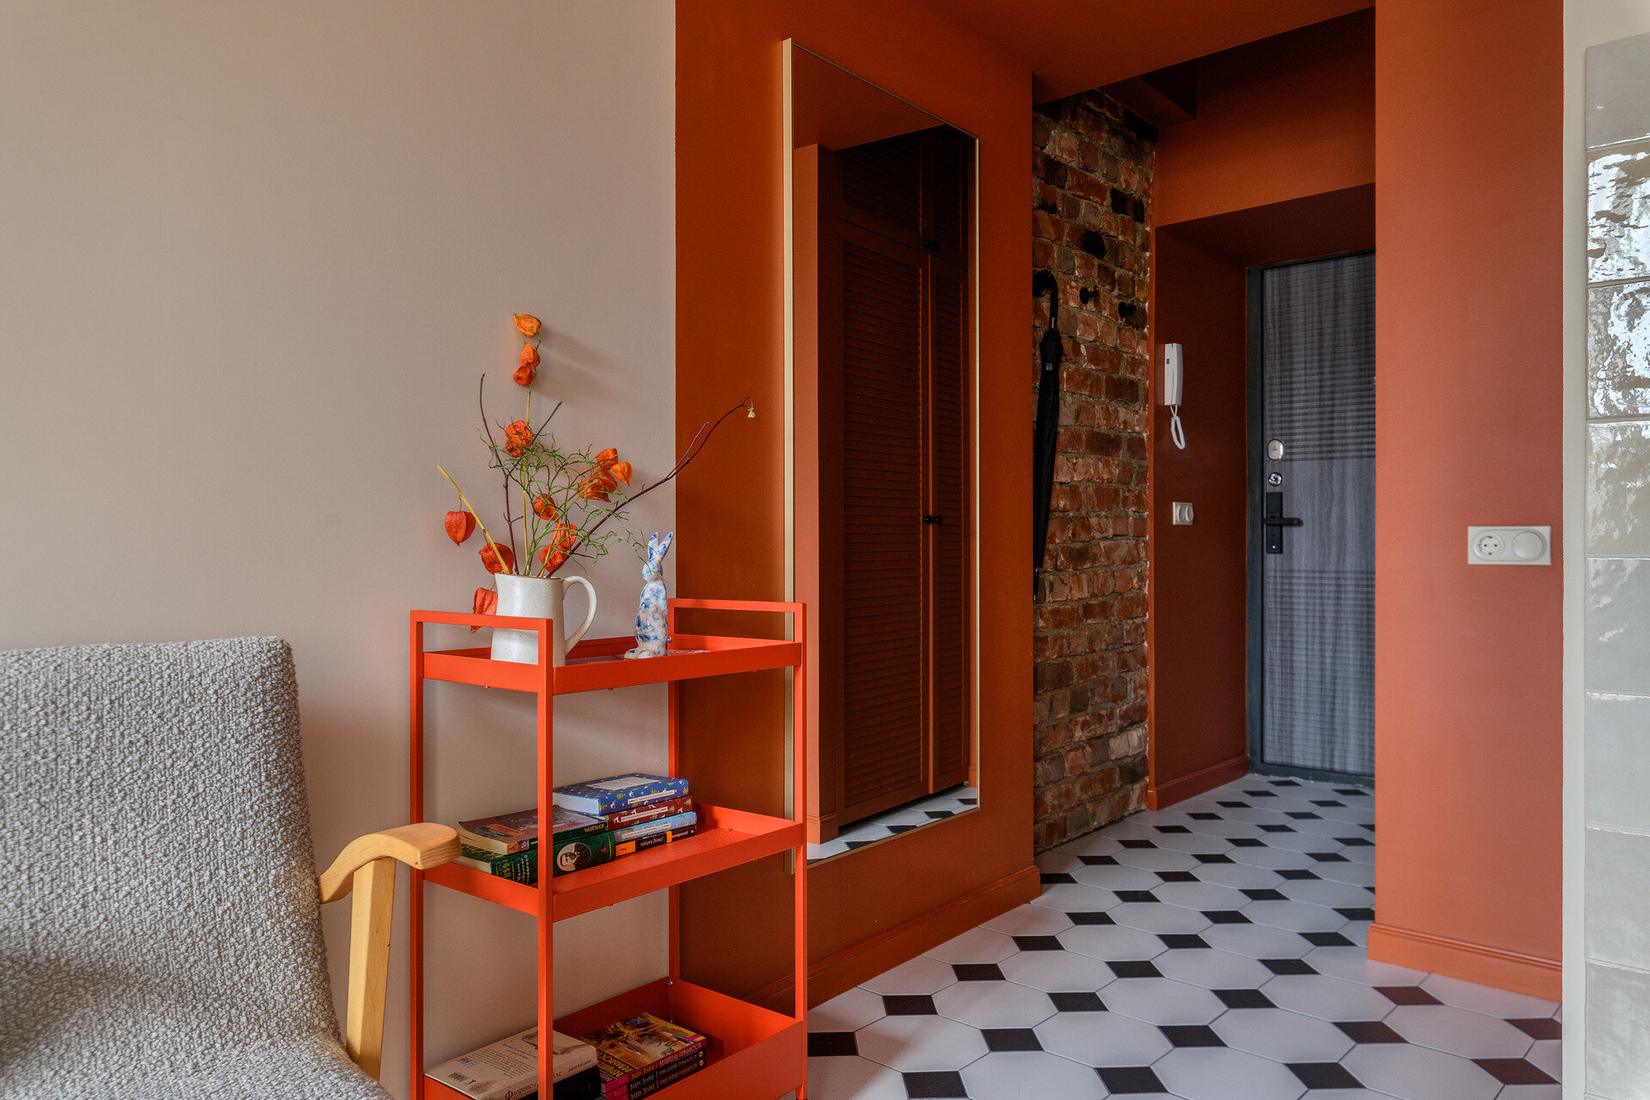 Egyszerűen de stílusosan berendezett mini lakás - 24m2, ahol szép mély színek teszik különlegessé a teret